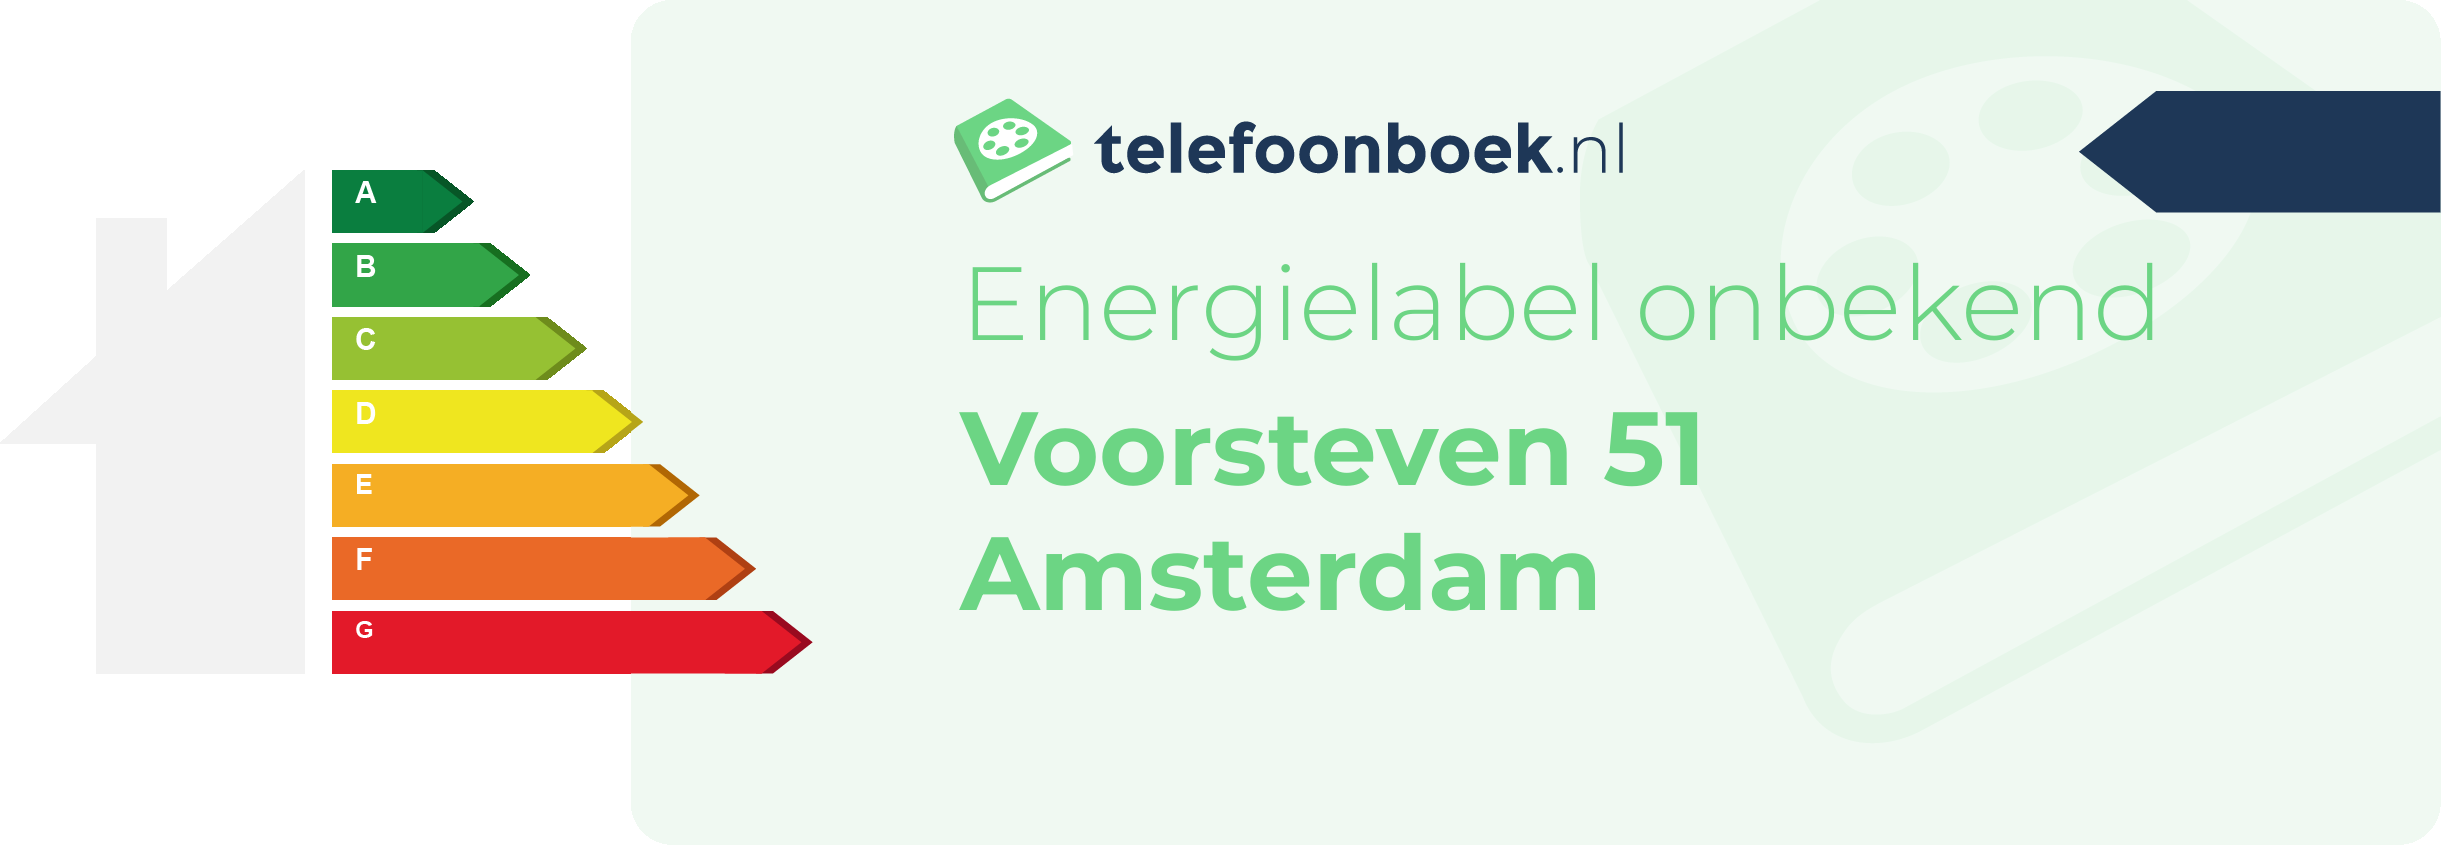 Energielabel Voorsteven 51 Amsterdam